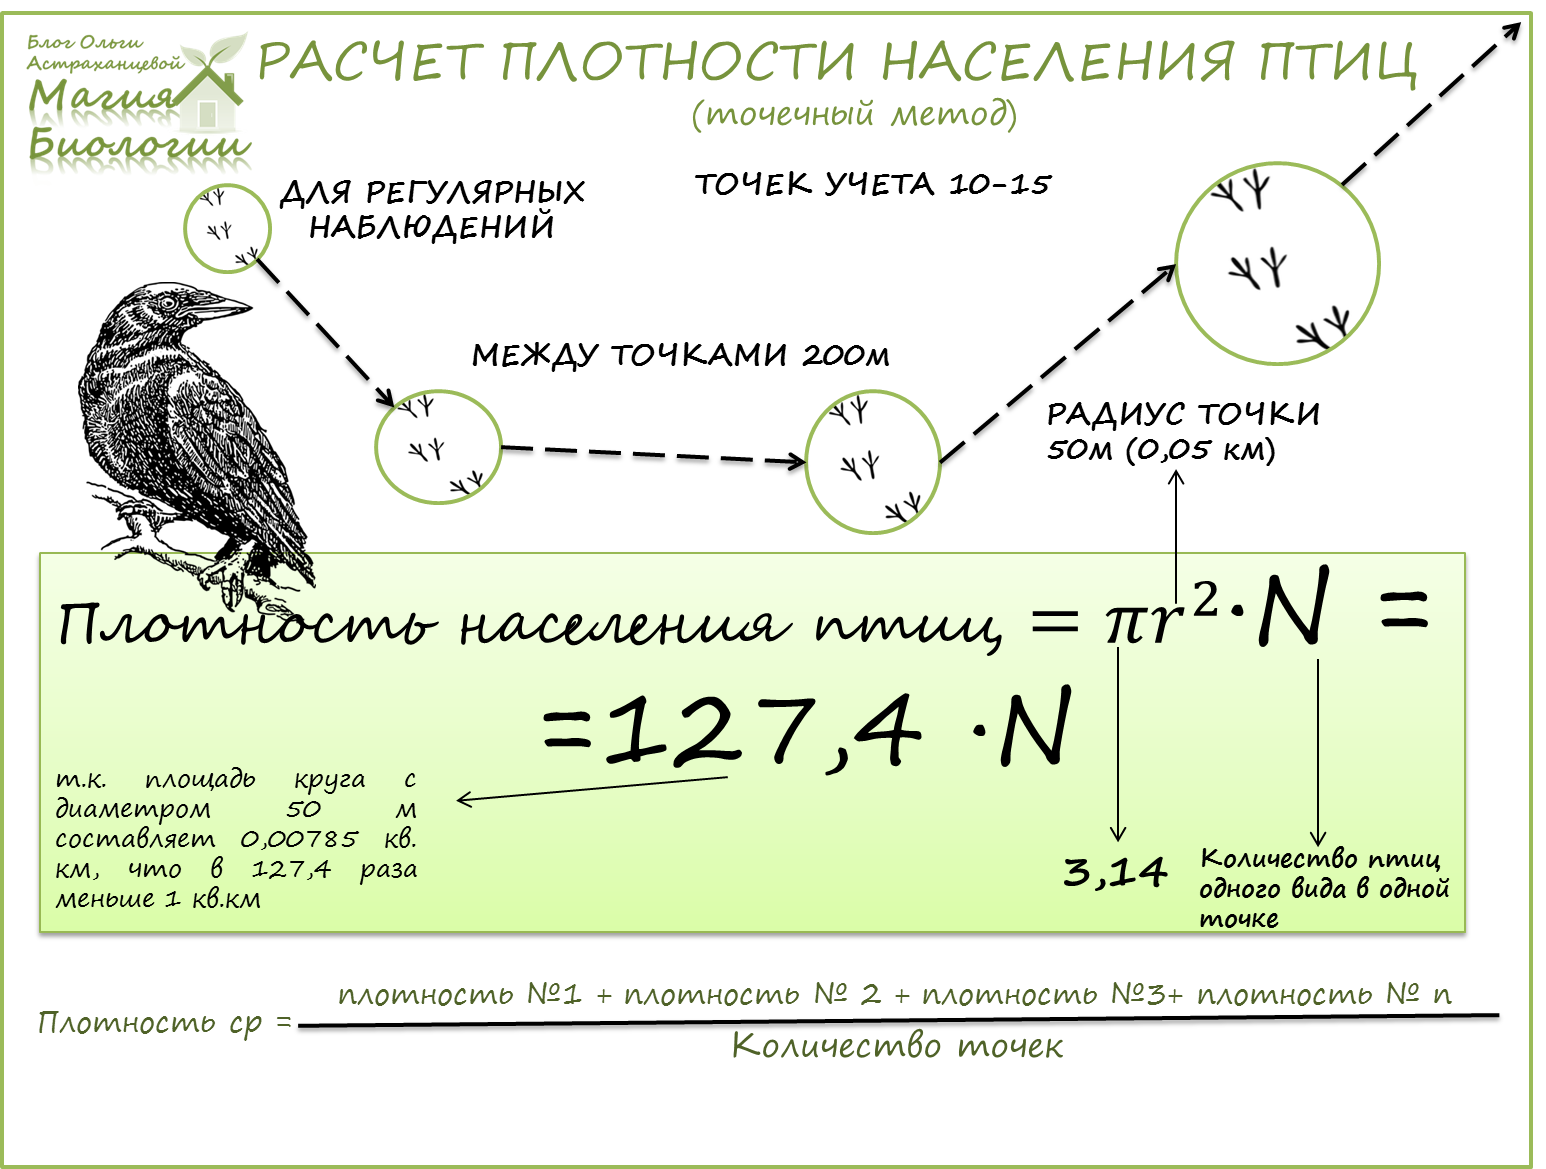 Плотный считать. Маршрутный метод учета птиц. Формула расчета плотности птиц. Плотность популяции птиц. Расчет плотности населения птиц.